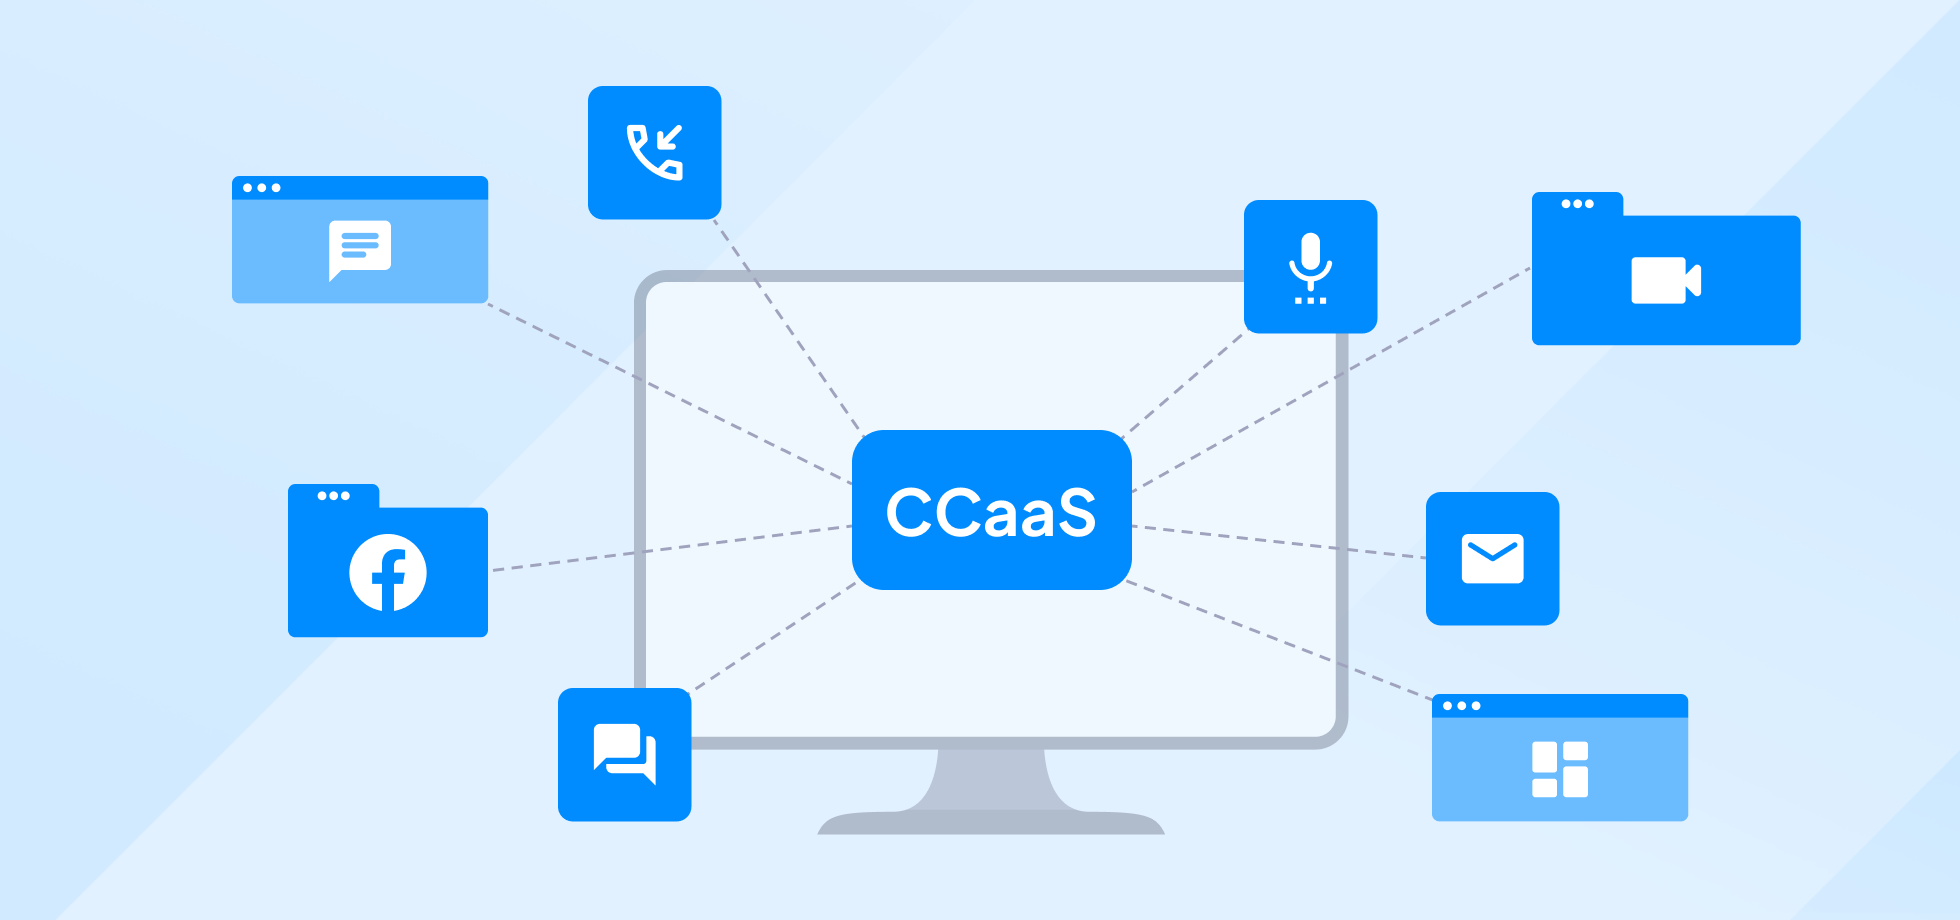 CCaaS channels wireframing schematics